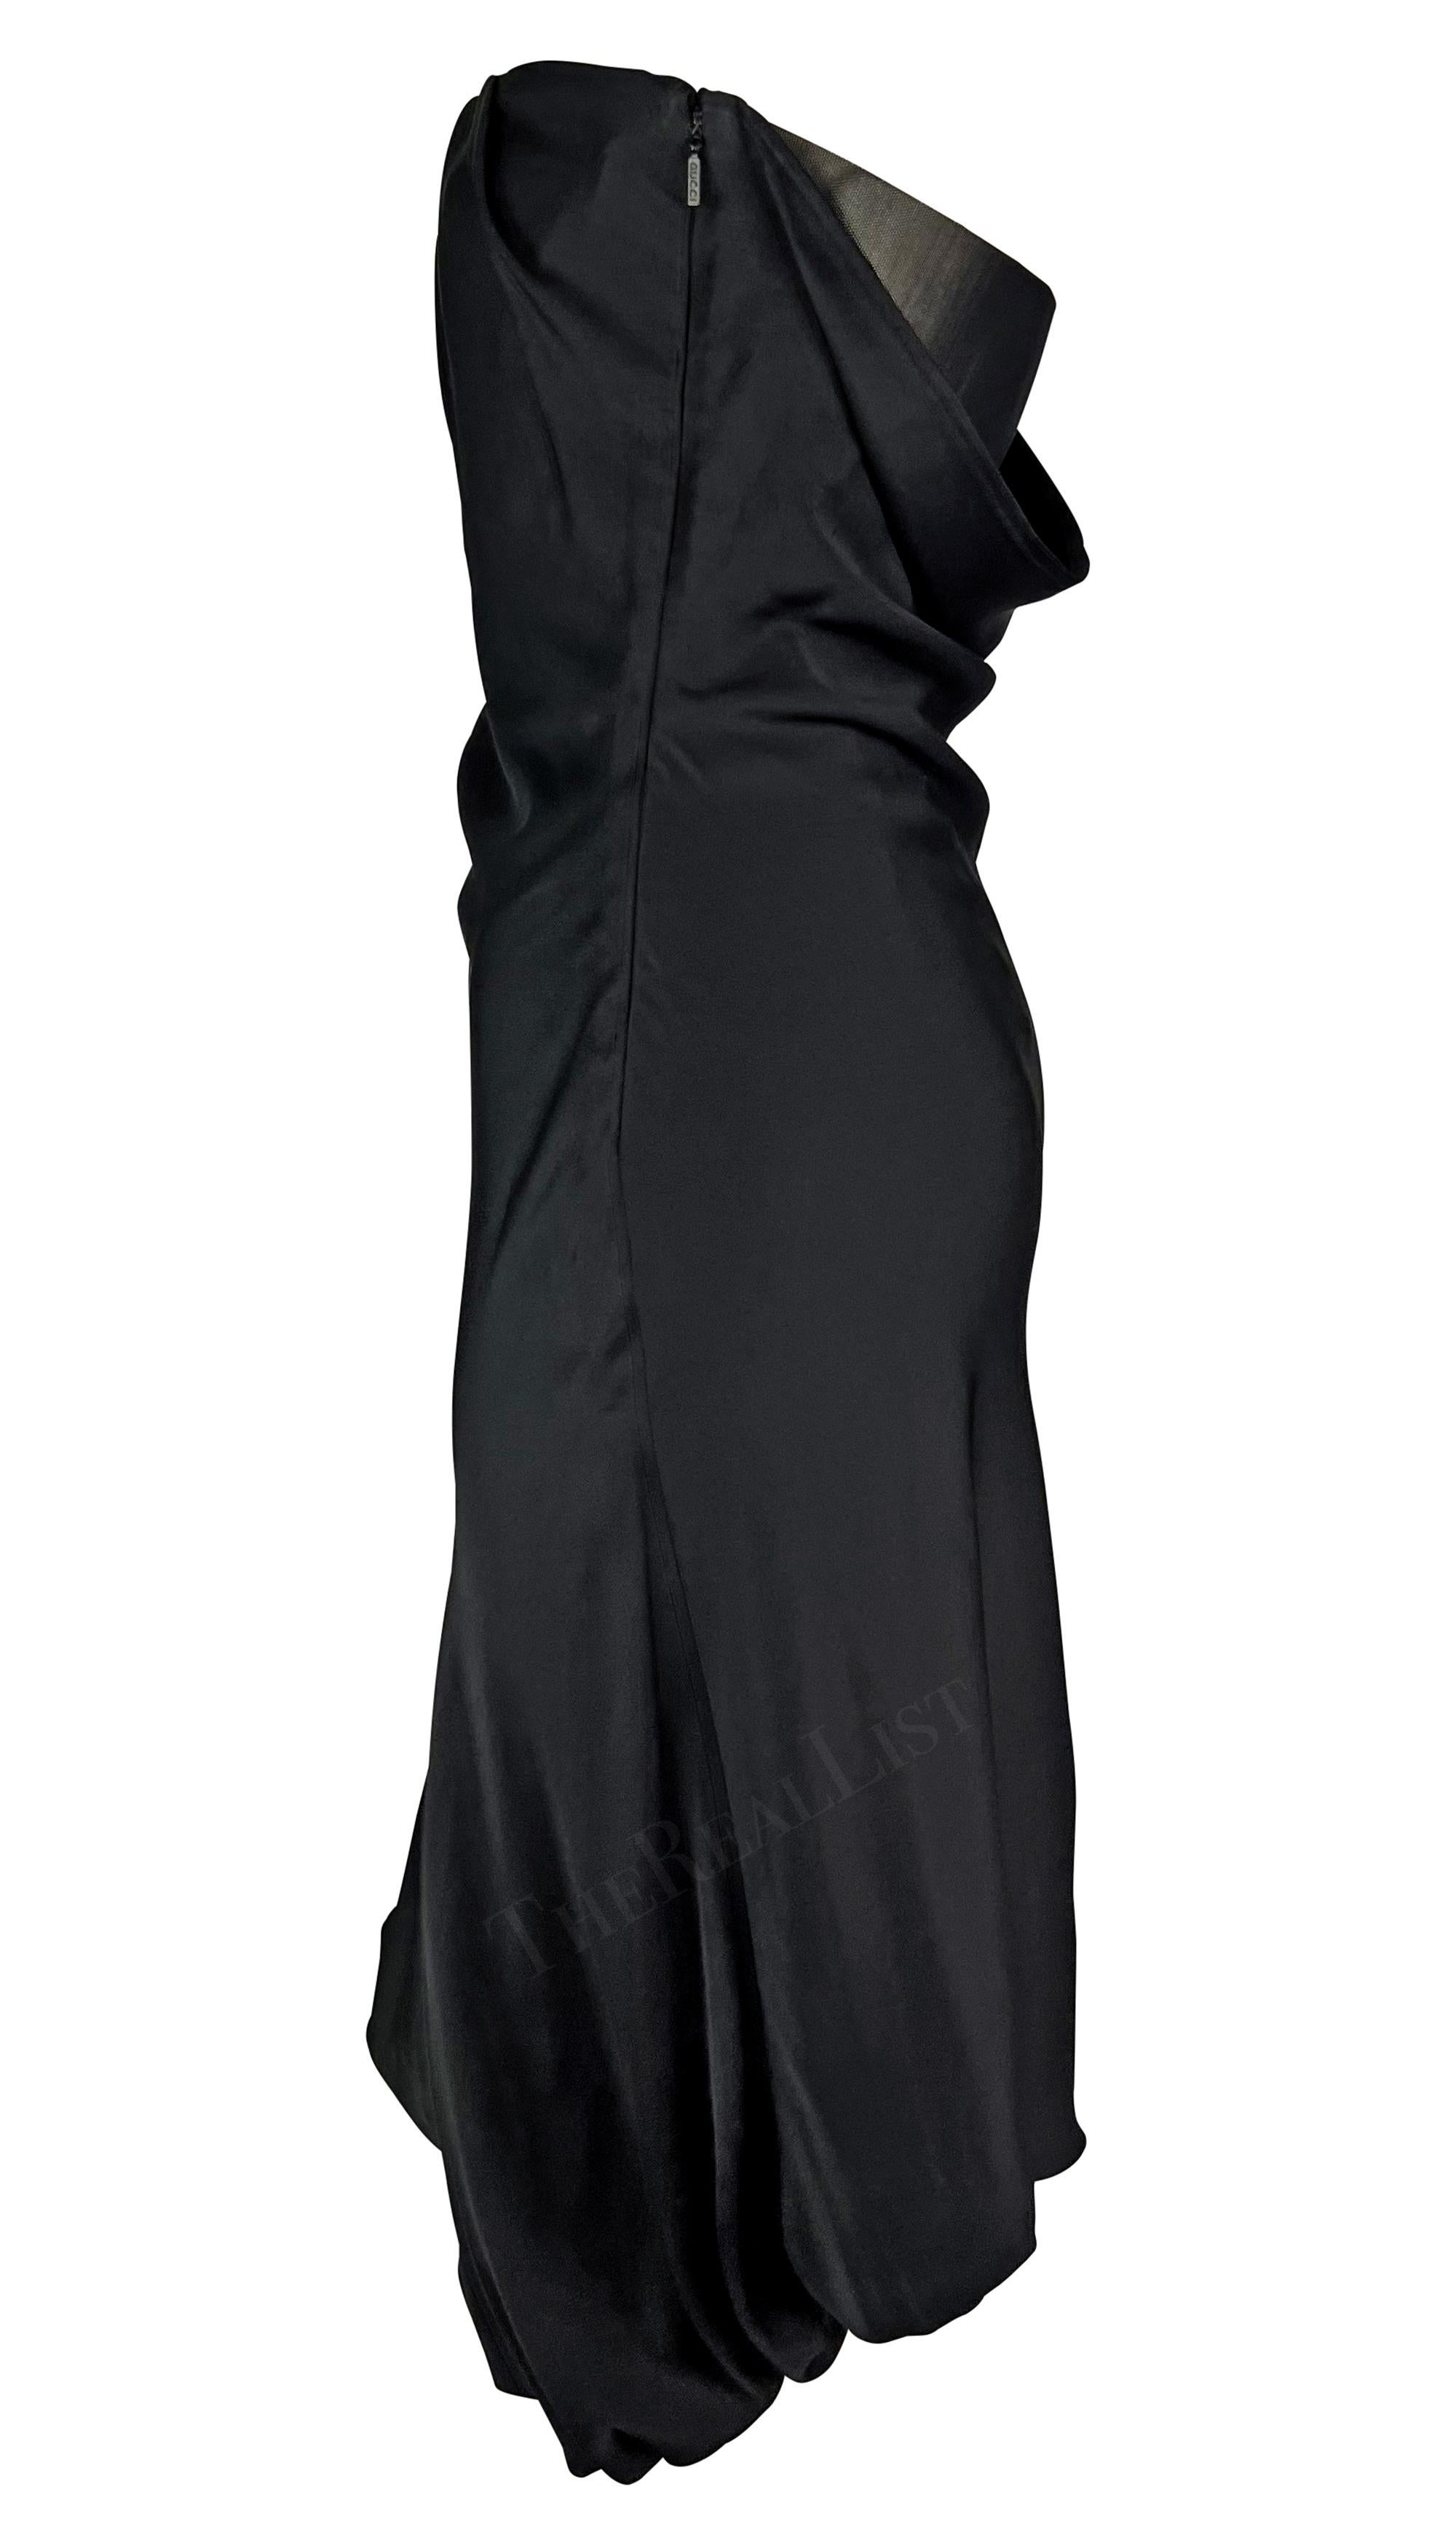 Présentation d'une superbe robe Gucci à bretelles et à dos ouvert, conçue par Tom Ford. Issue de la collection Printemps/Eté 2001, cette robe en satin de soie présente un collier de soie.  Silhouette ballon et drapé élégant. Des plis détaillés au